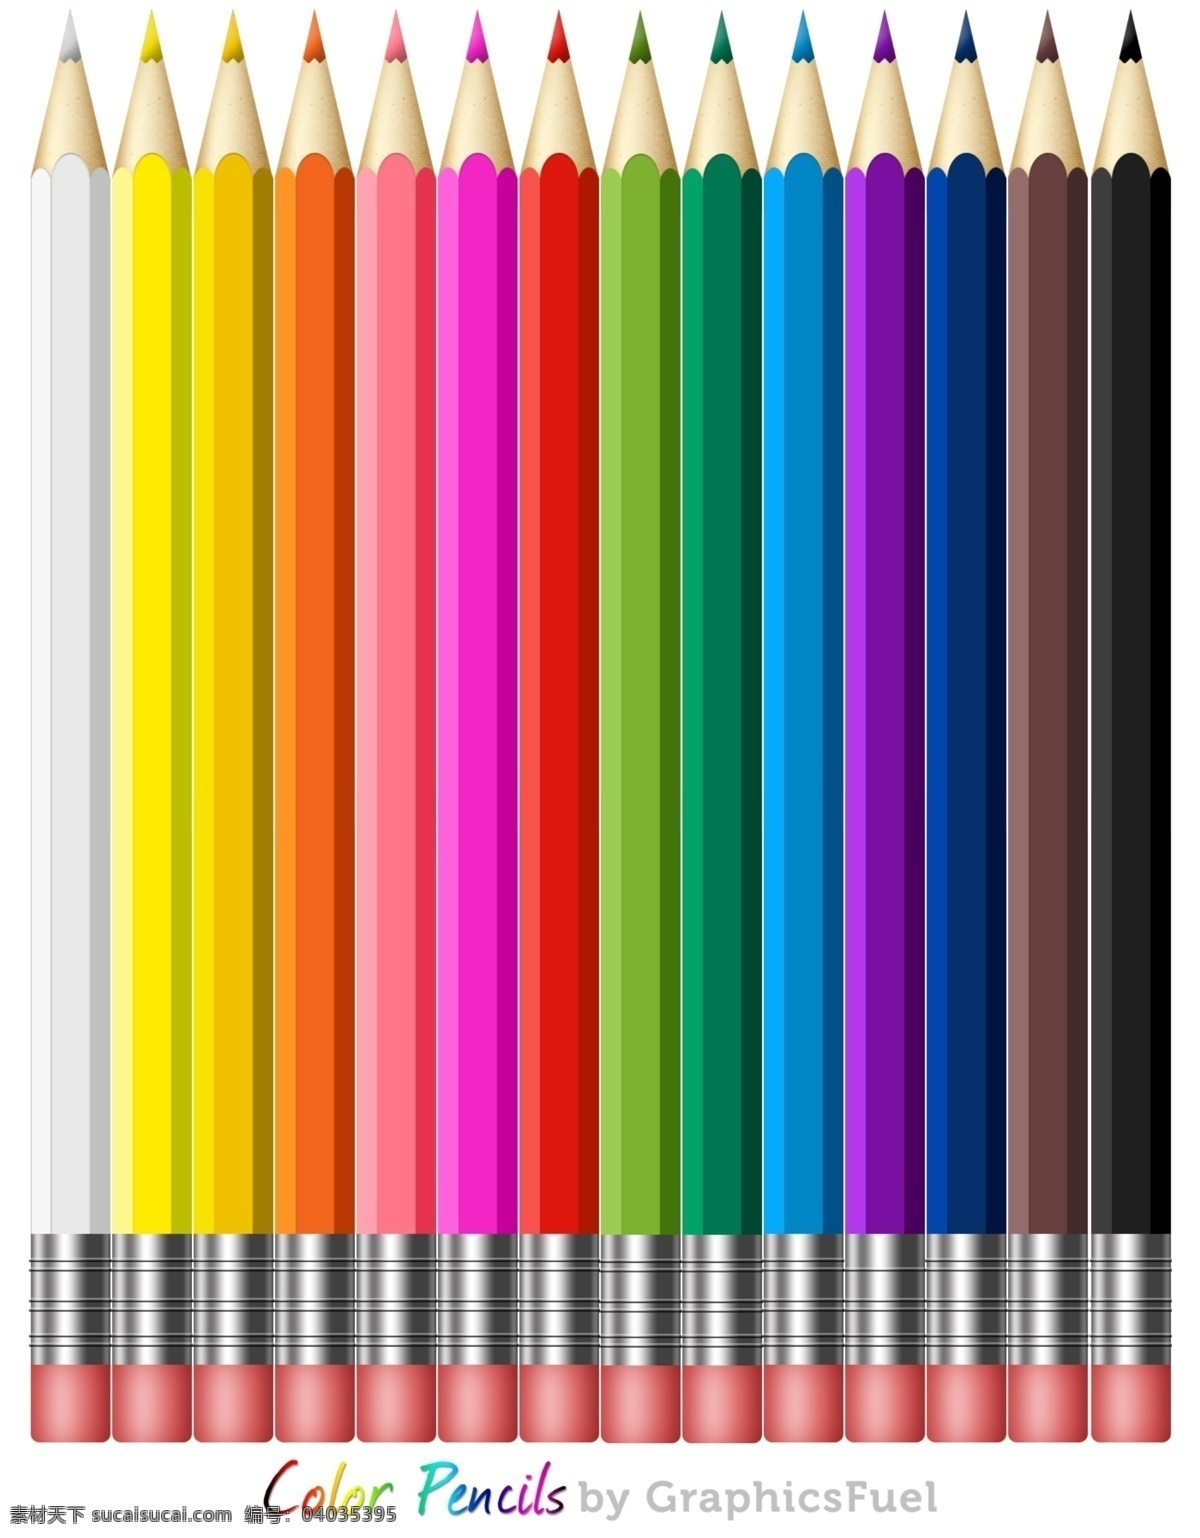 七彩铅笔 铅笔 七彩色 铅笔画 创意铅笔 铅笔俱乐部 其他模版 广告设计模板 源文件